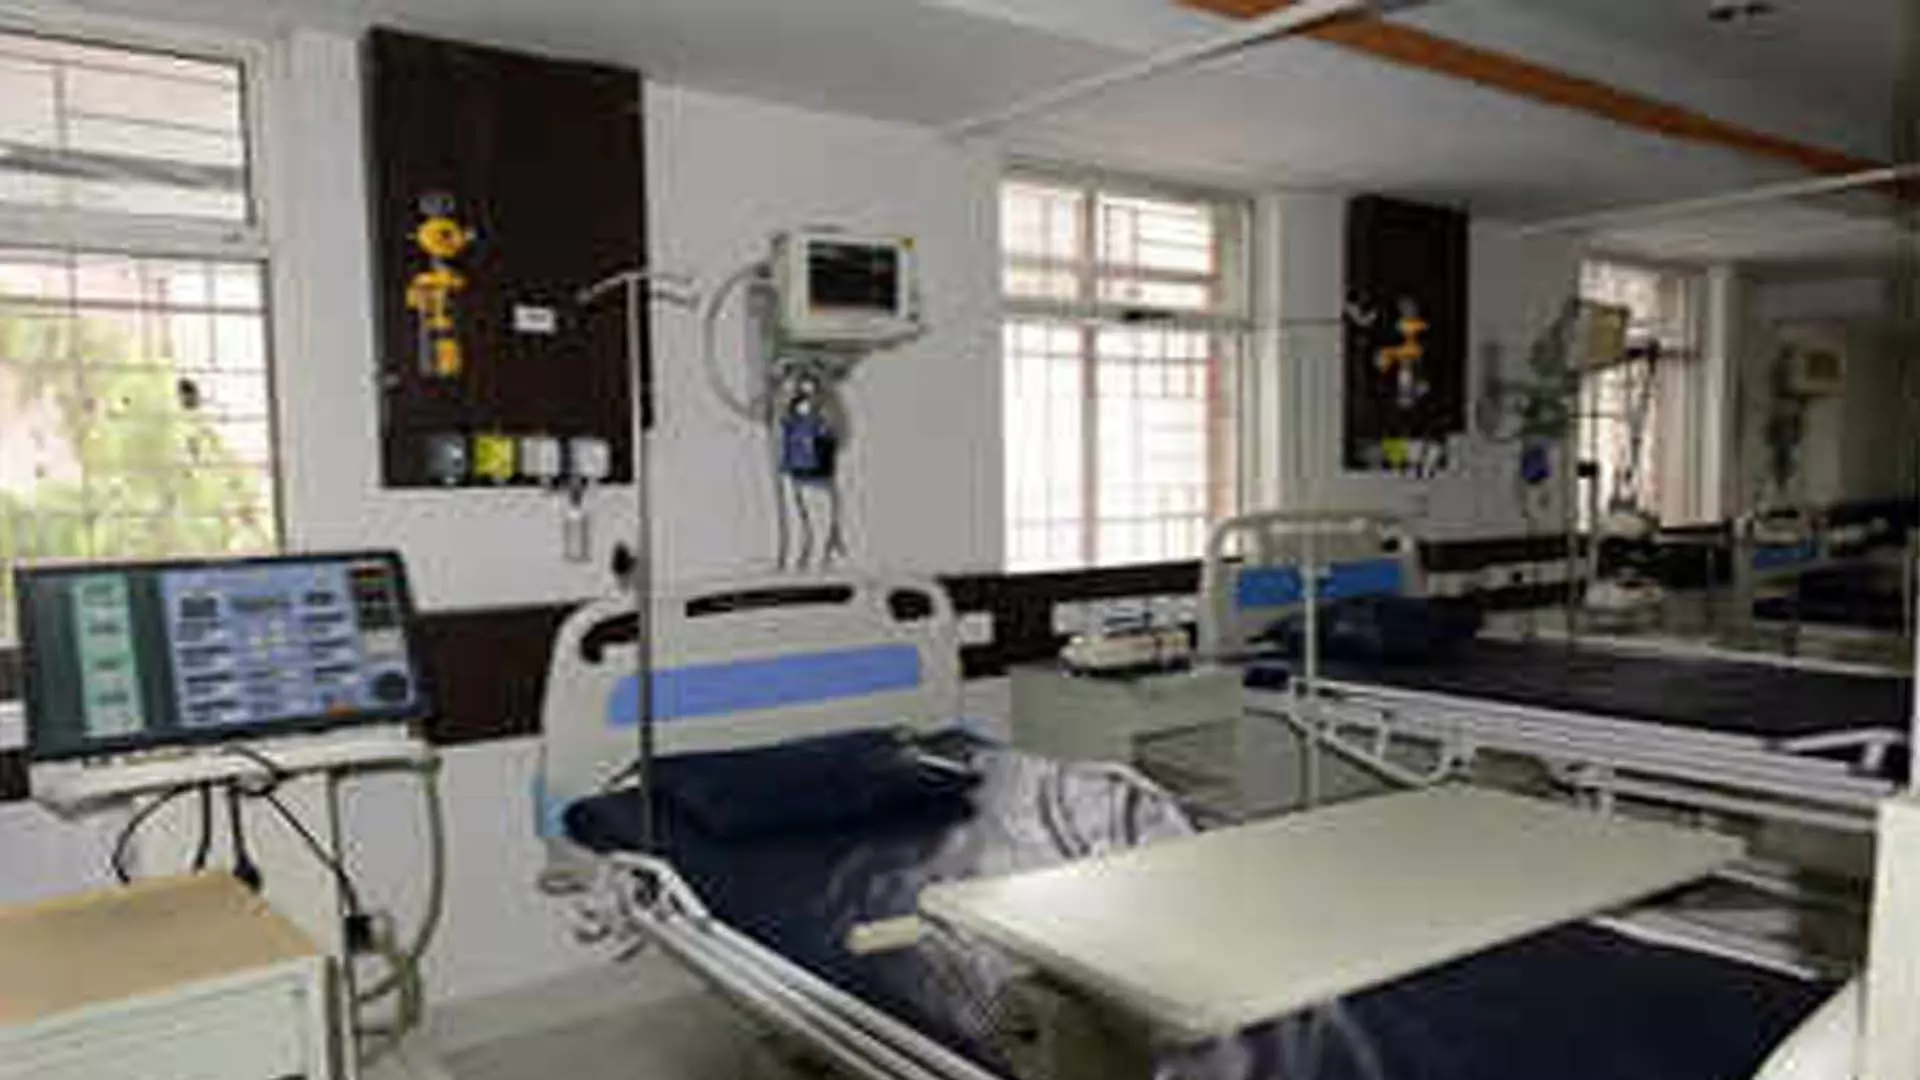 अस्पतालों में गर्मी का एहसास, नियोजित ऑपरेशन स्थगित